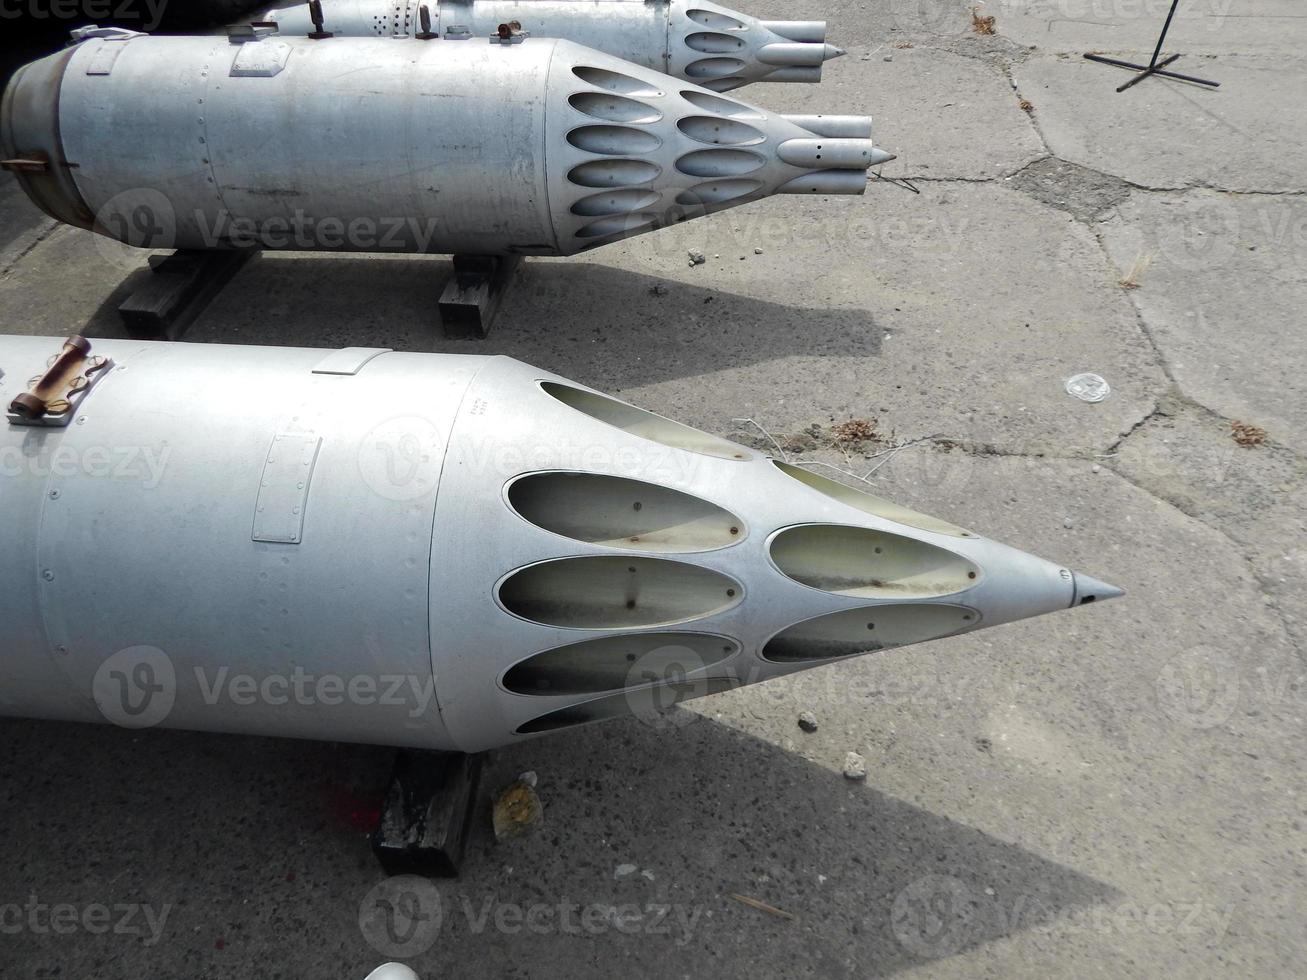 Bewaffnung von Flugzeugen und Hubschraubern Raketen, Bomben, Kanonen foto